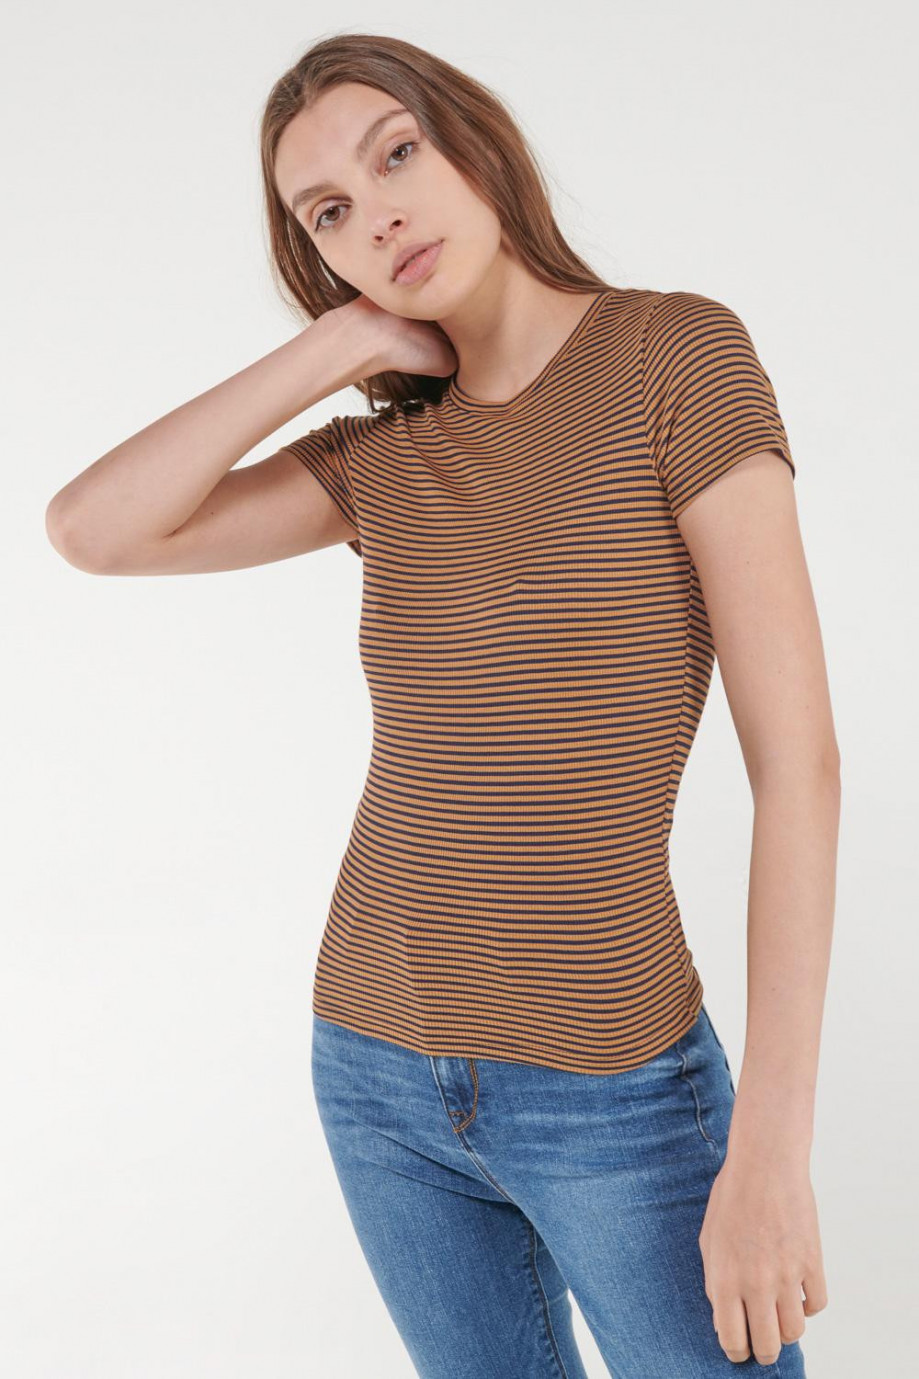 Camiseta unicolor manga corta con estampado de rayas horizontales